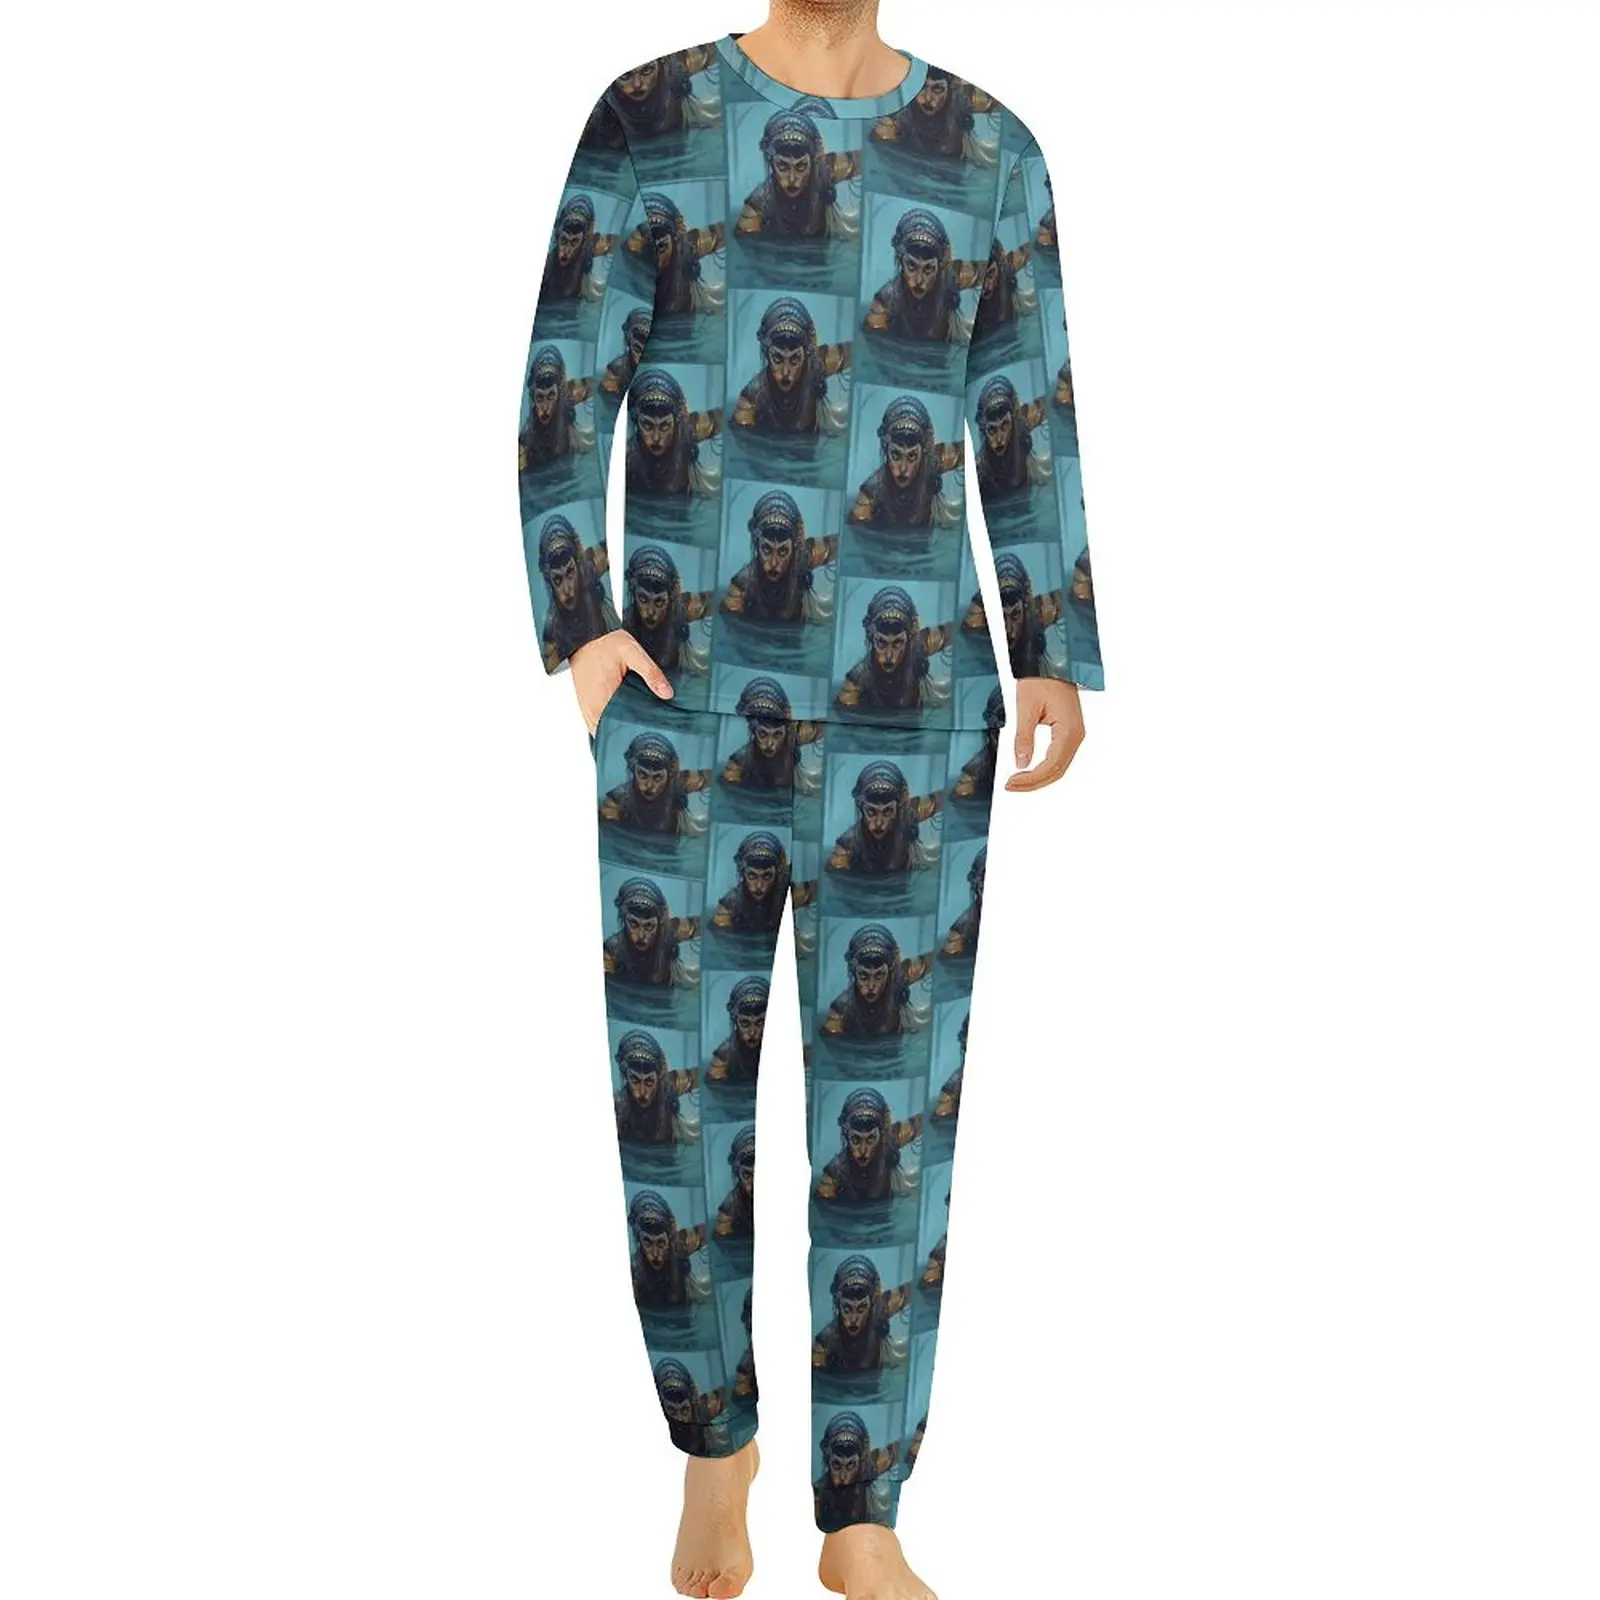 Robots Jibaro Pajamas Long Sleeve Love Death 2 Pieces Night Pajama Sets Spring Man Graphic Retro Oversized Sleepwear